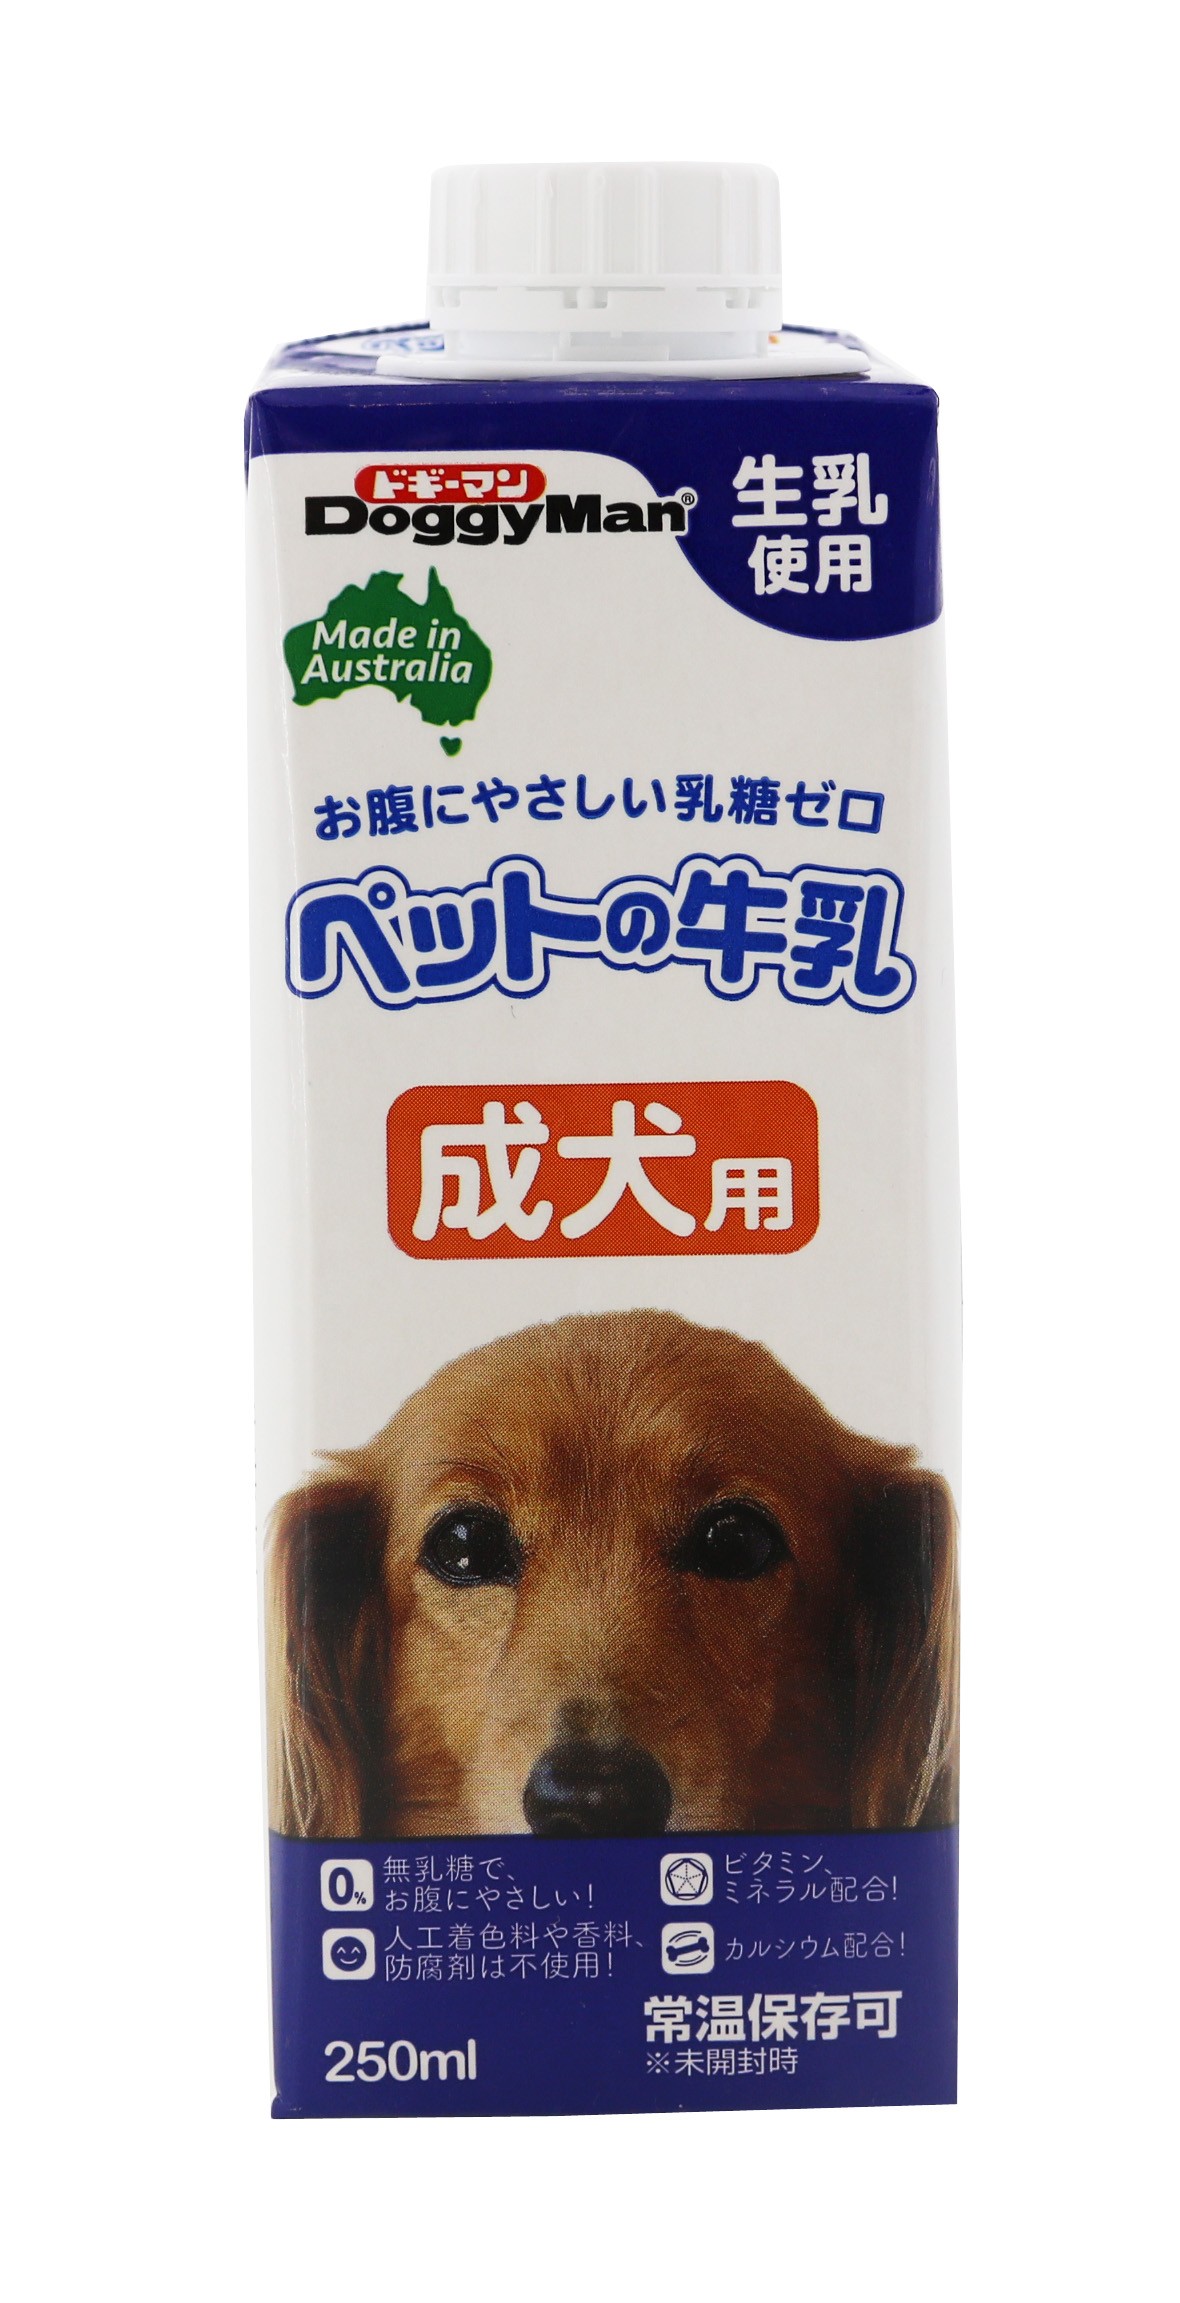 売れ筋商品 ドギーマン ペットの牛乳 成犬用 250ml 1ケース24個セット